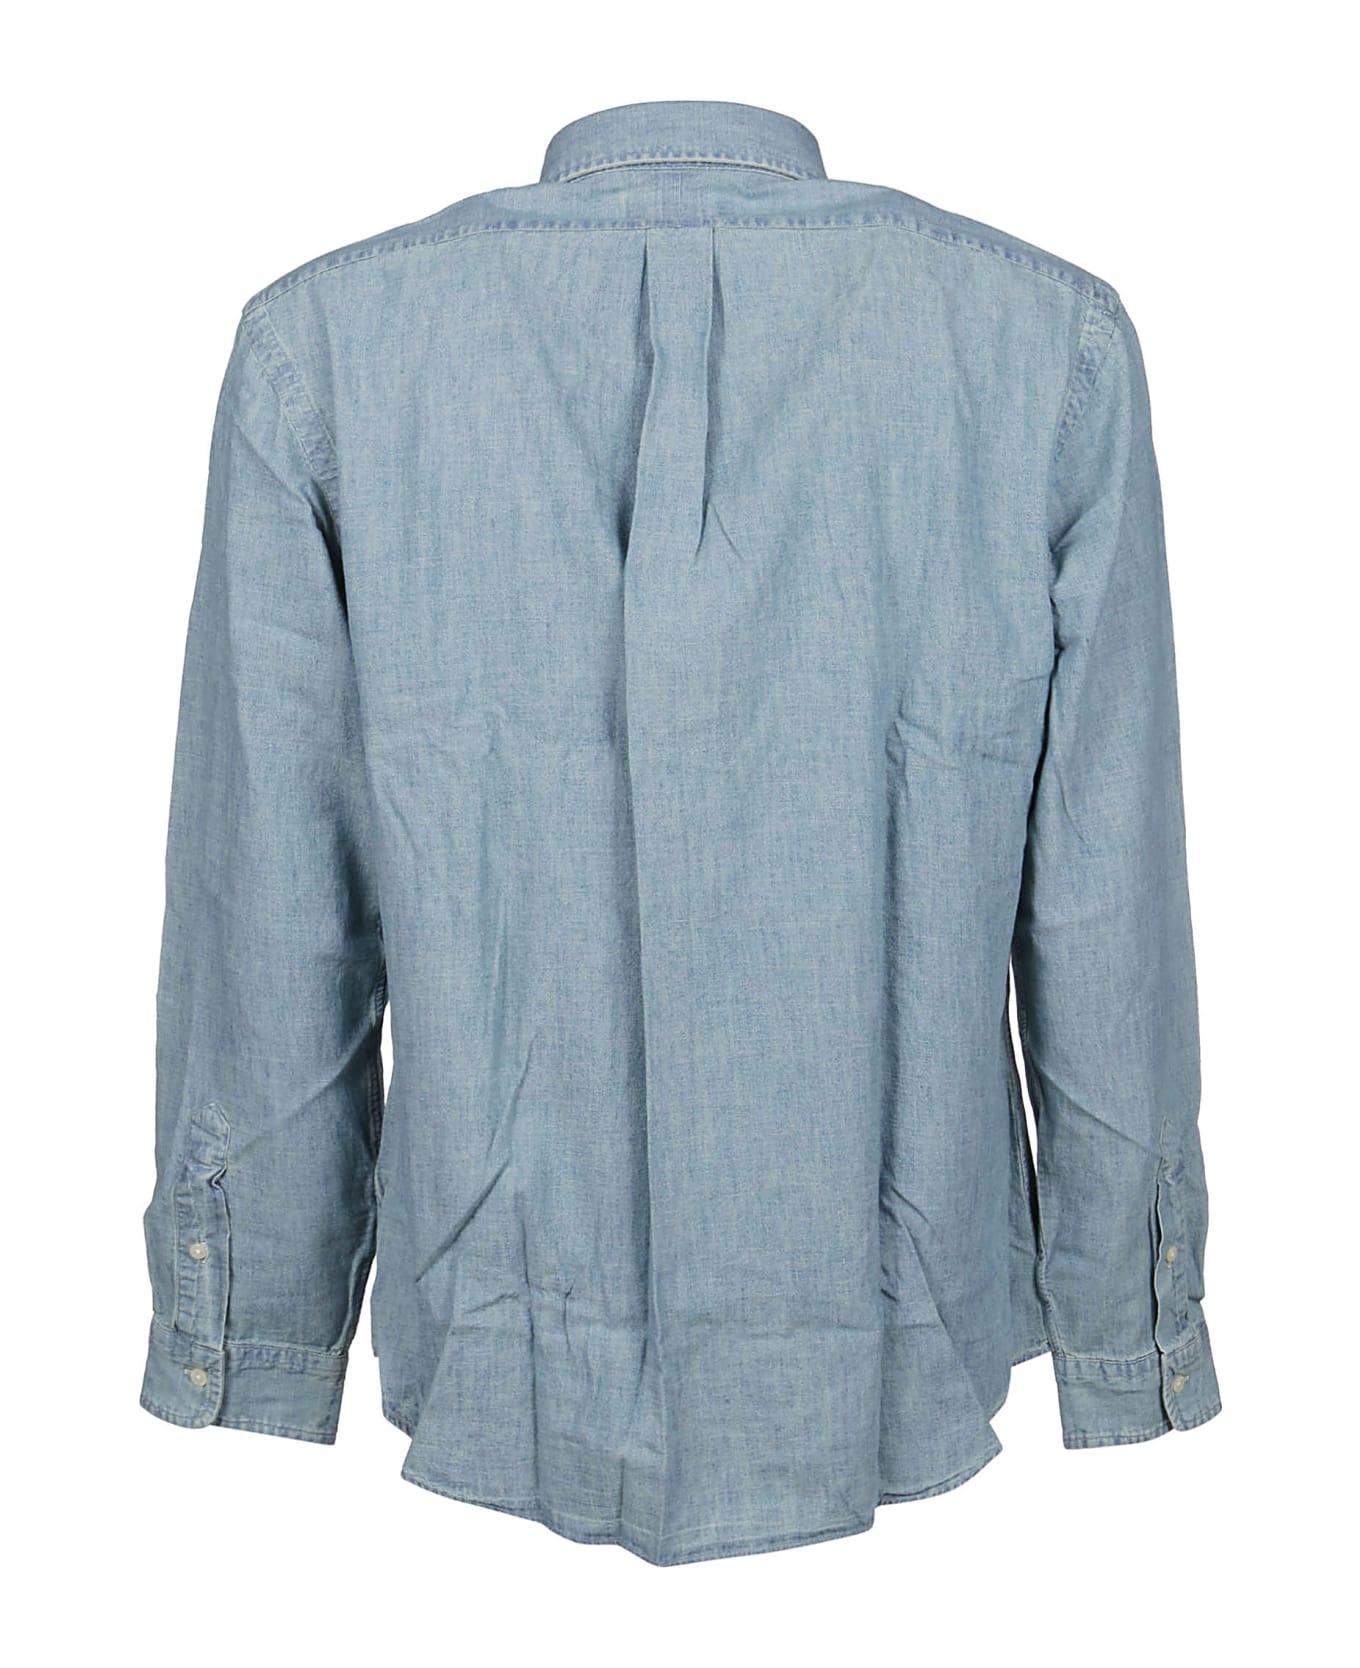 Polo Ralph Lauren Long Sleeve Sport Shirt - Chambray